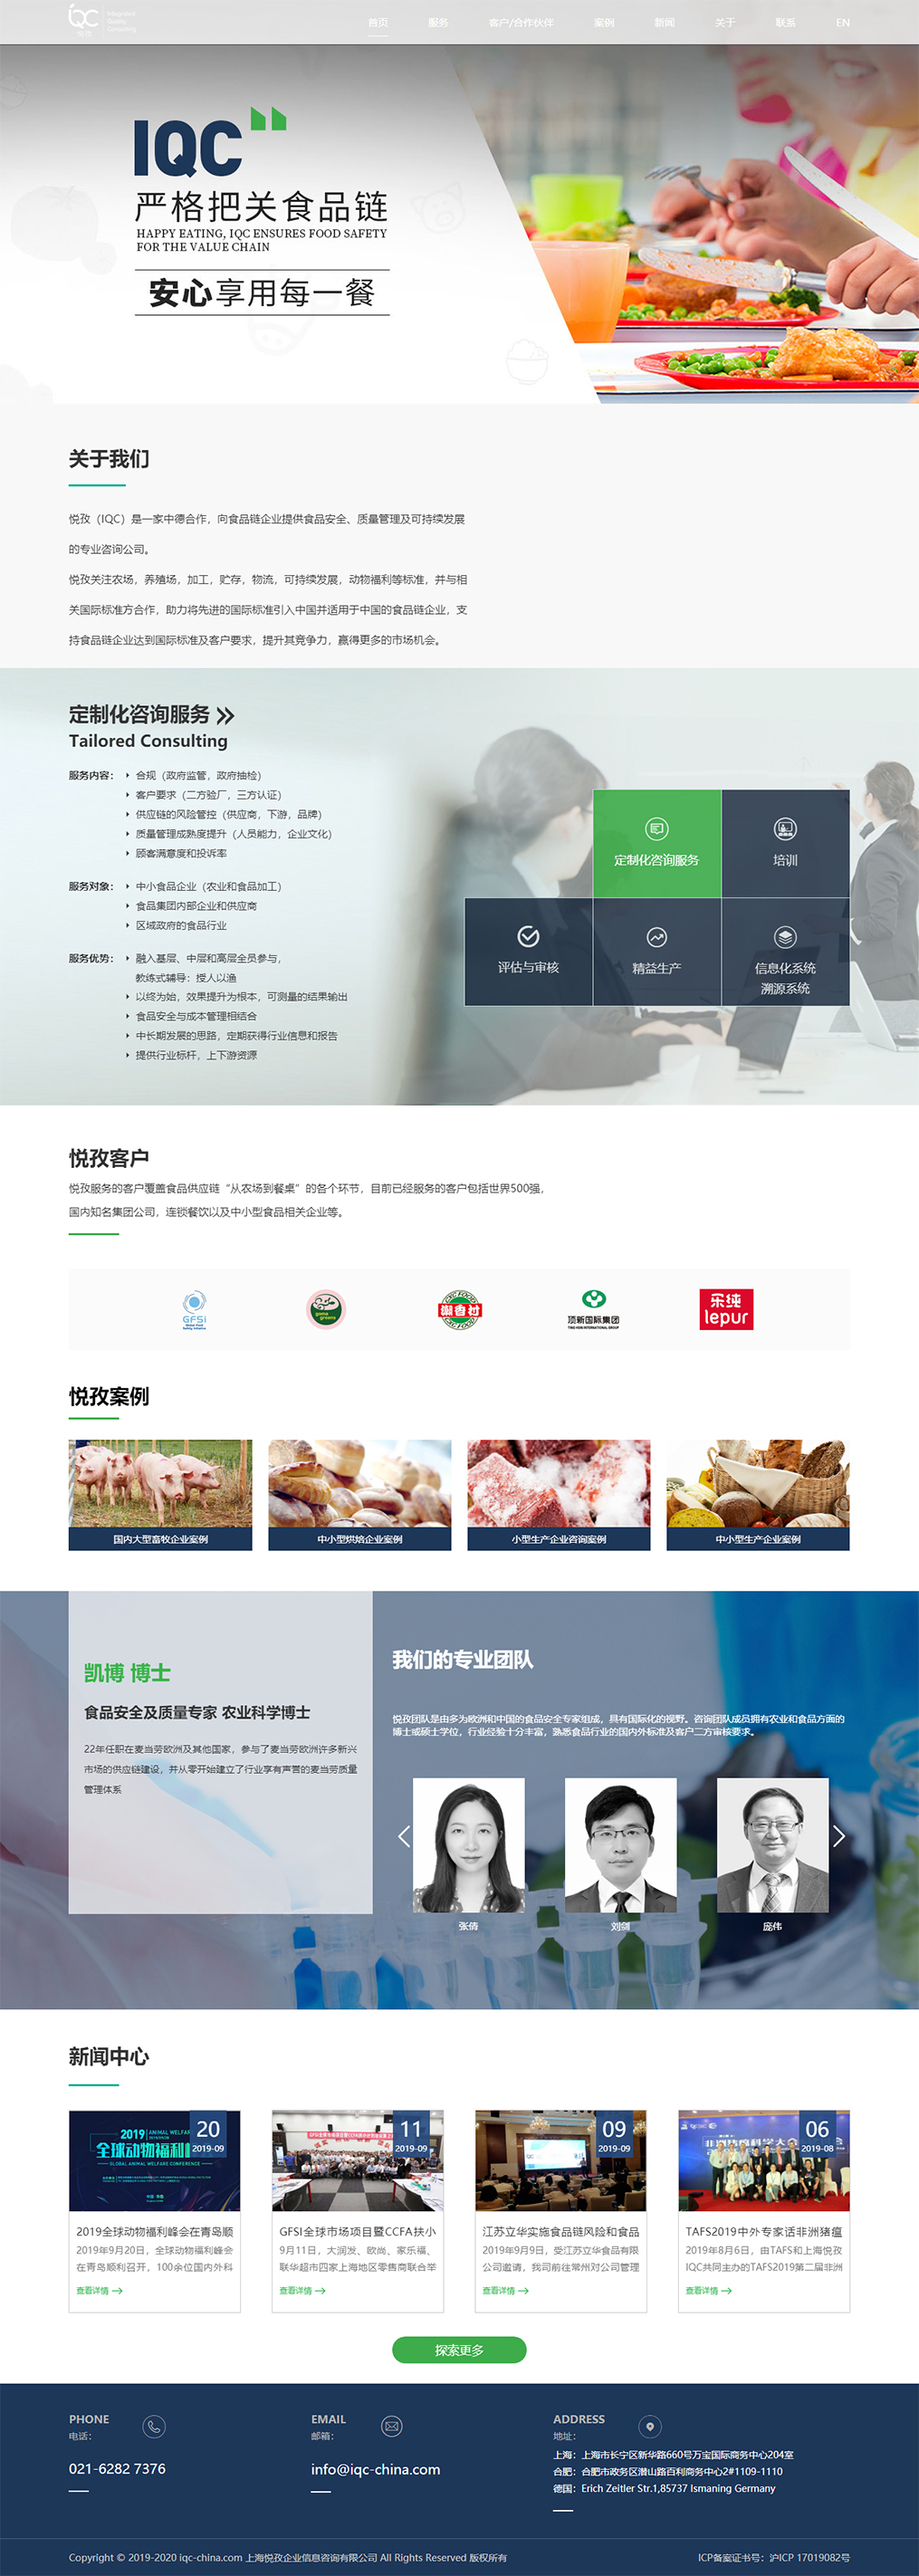 上海悦孜企业信息咨询有限公司网站效果图